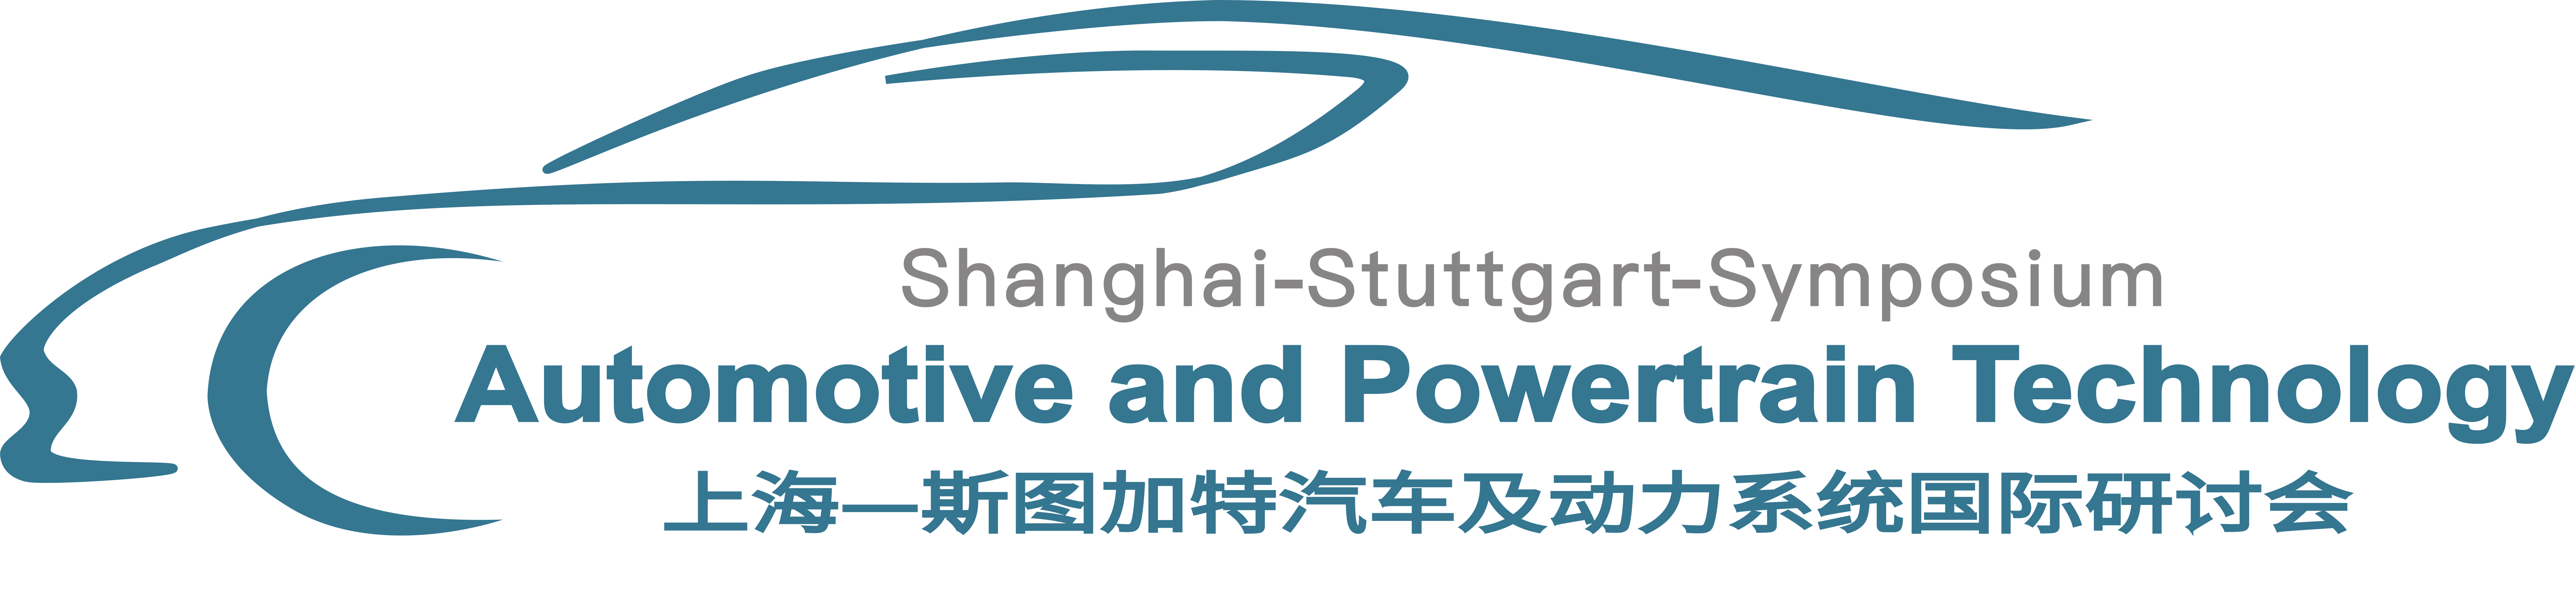 上海-斯图加特汽车及动力系统国际研讨会SSS 2021.png